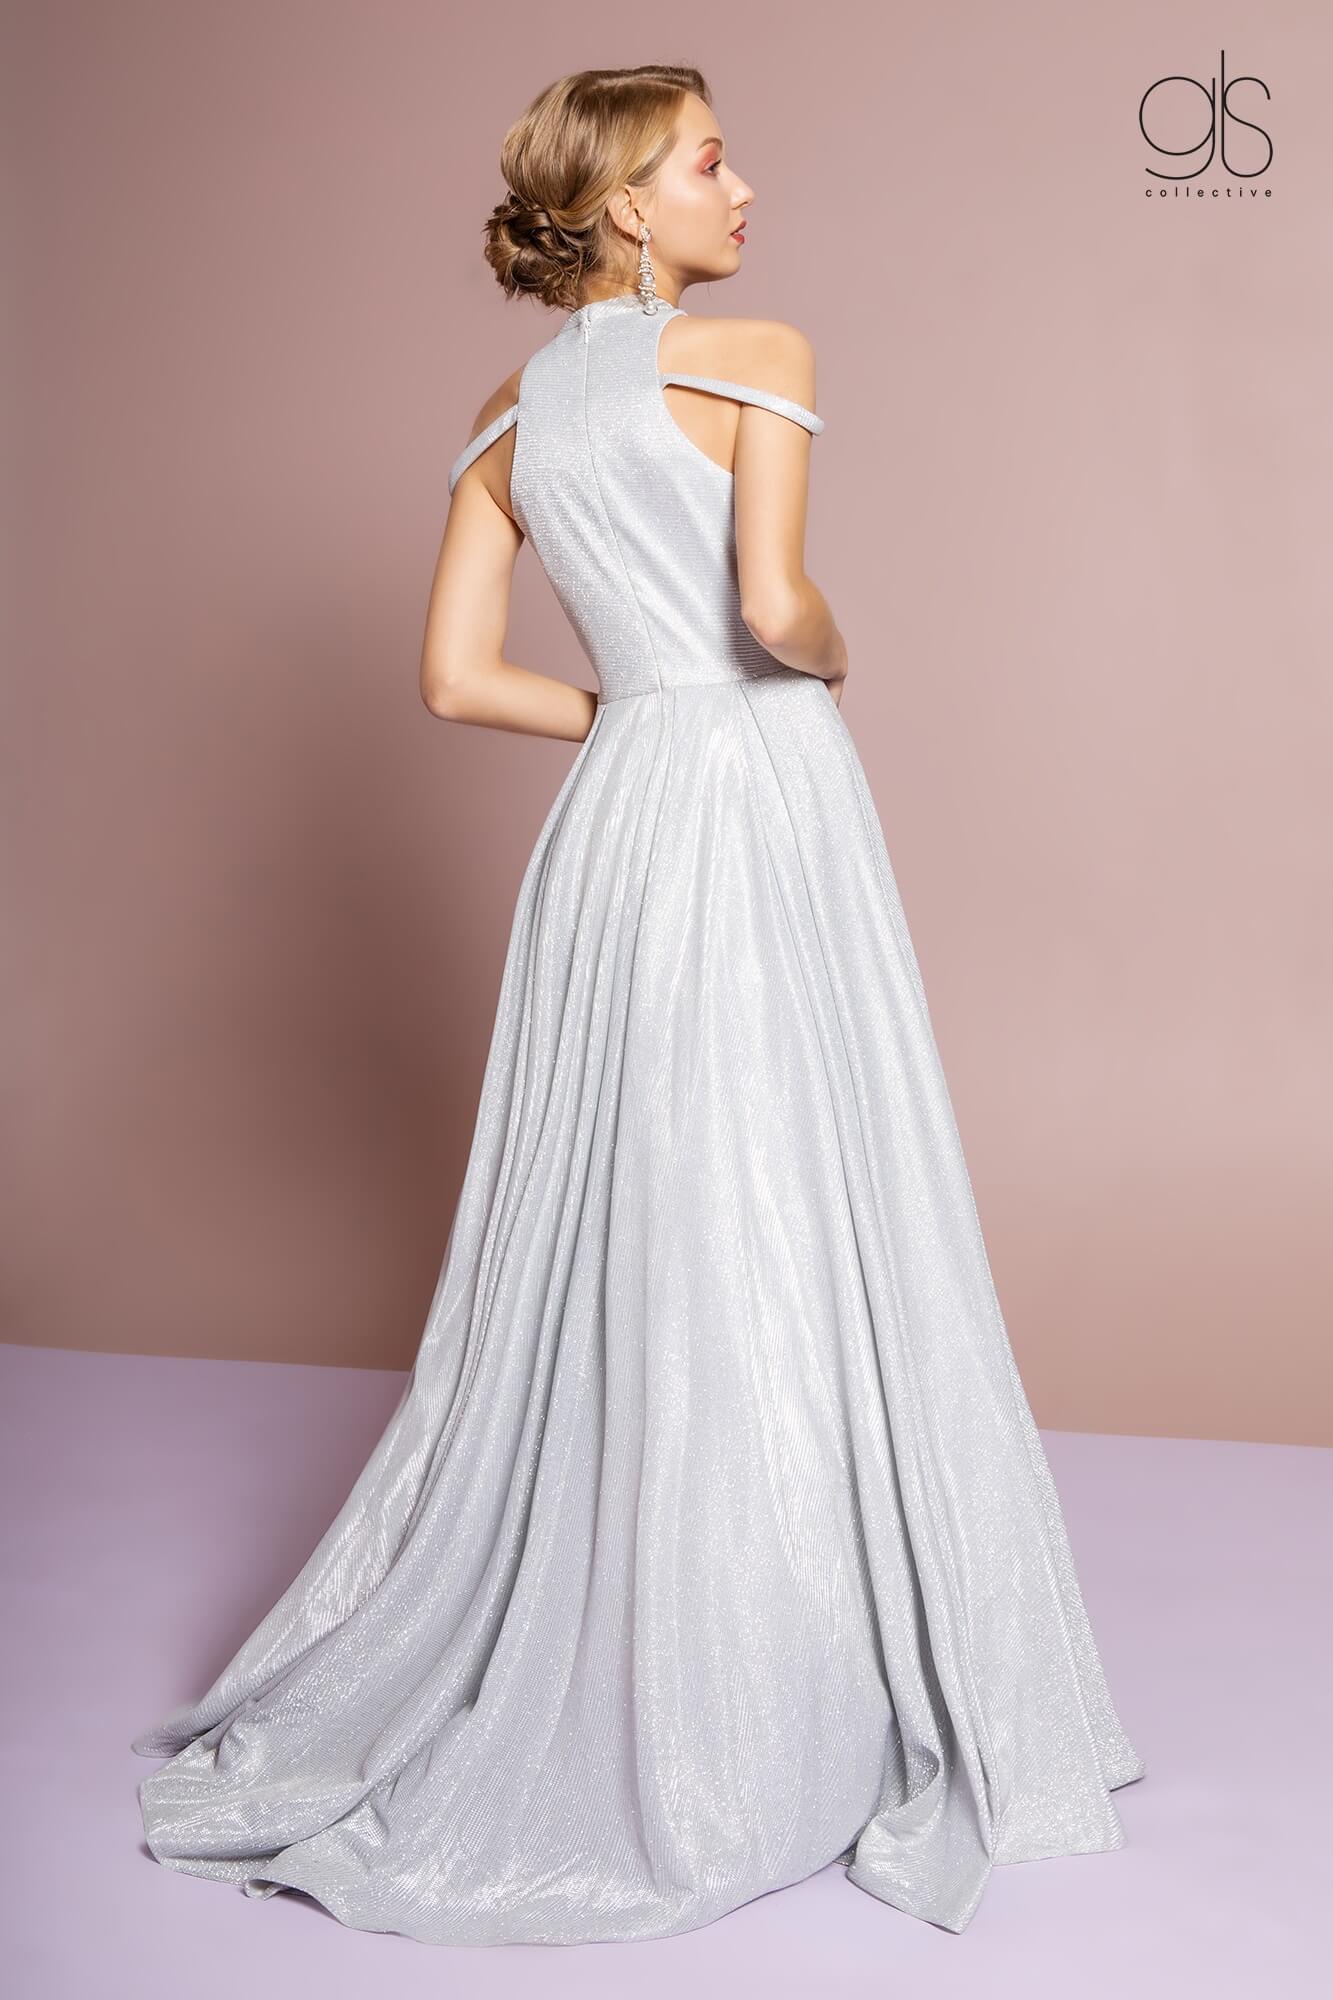 Prom Long Formal Evening Dress - The Dress Outlet Elizabeth K